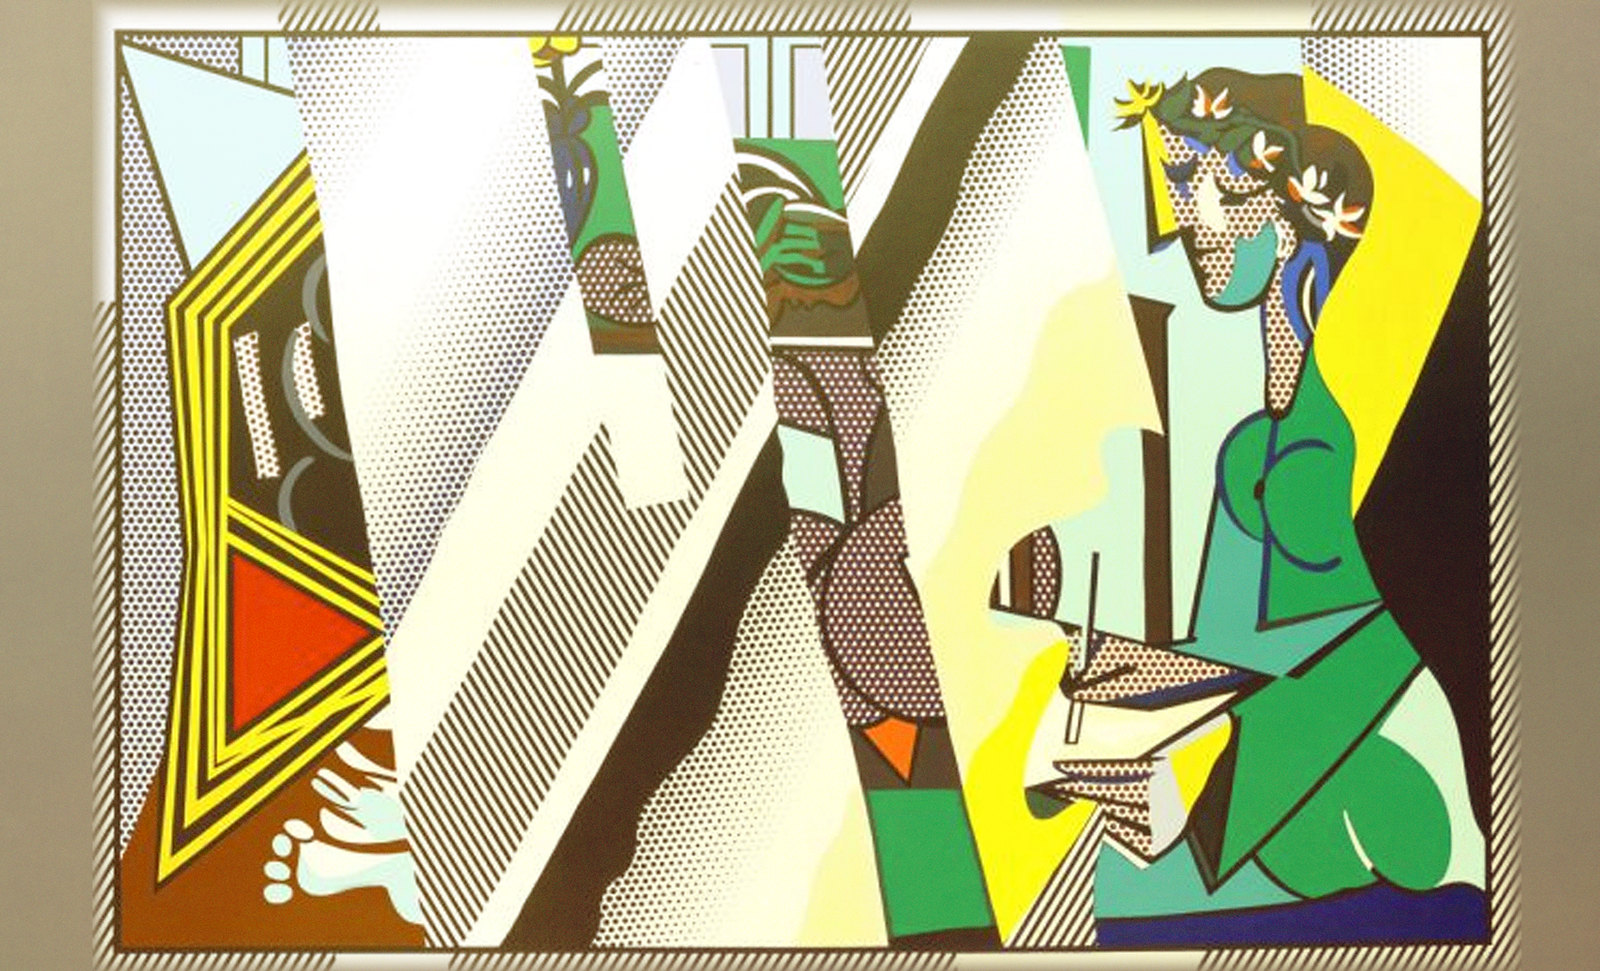 Dibujando el Espejo, relato de Pablo Picasso (1934), transfiguración de Roy Lichtenstein (1990).